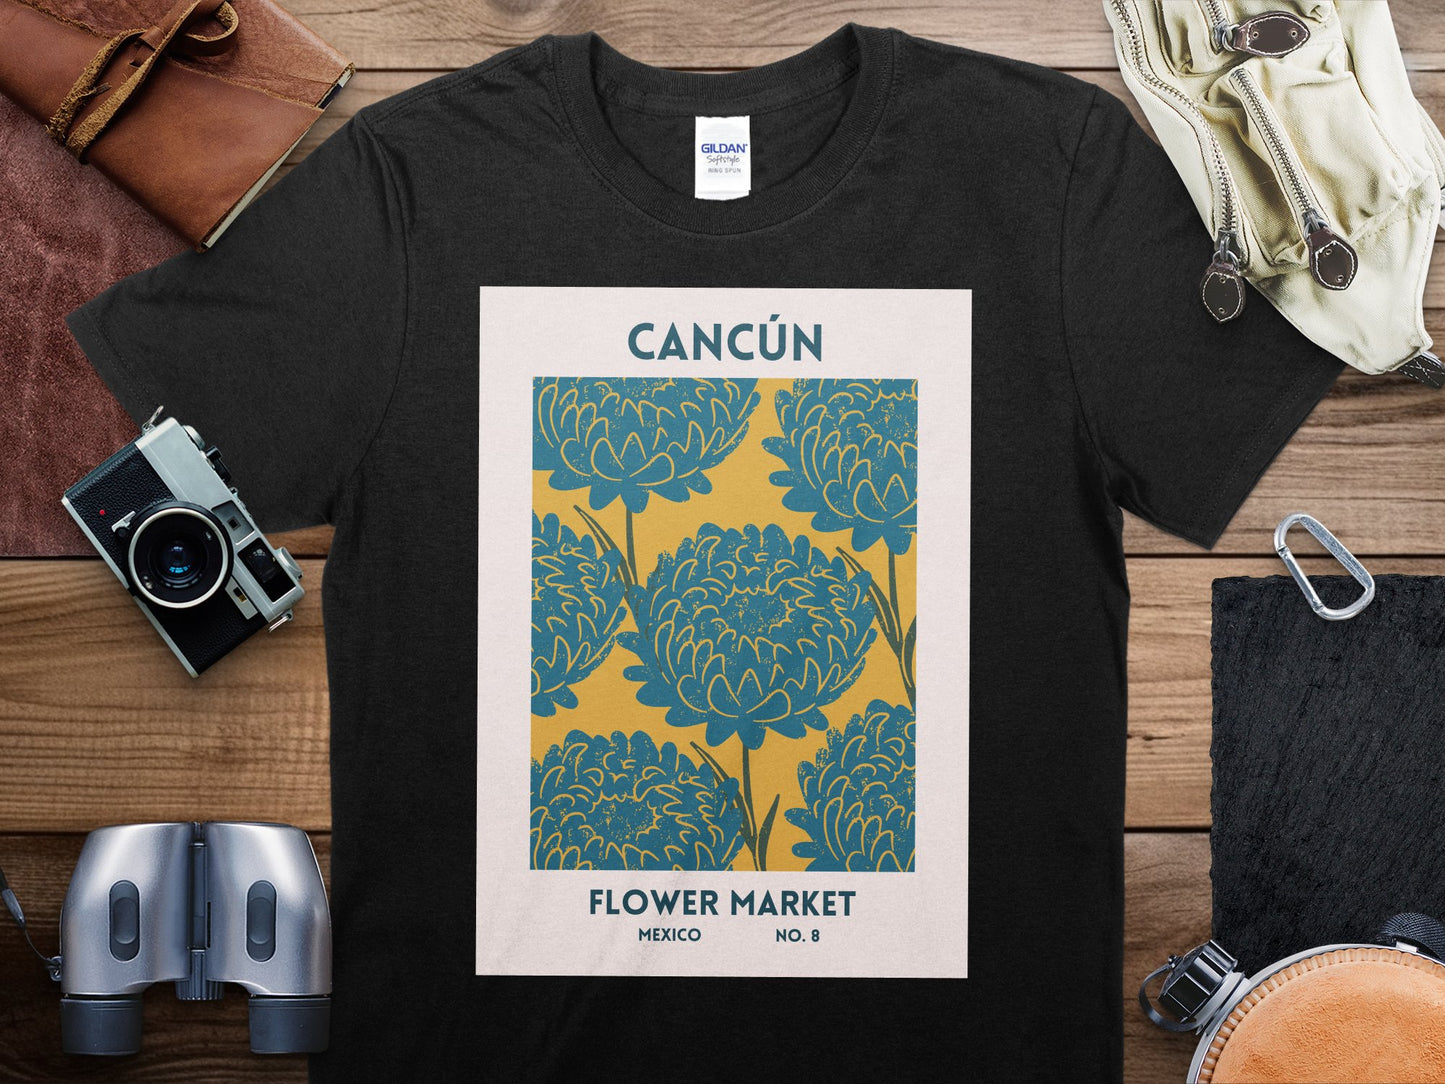 Cancun Flower Market Mexico T-Shirt, Cancun Flower Market Travel Shirt